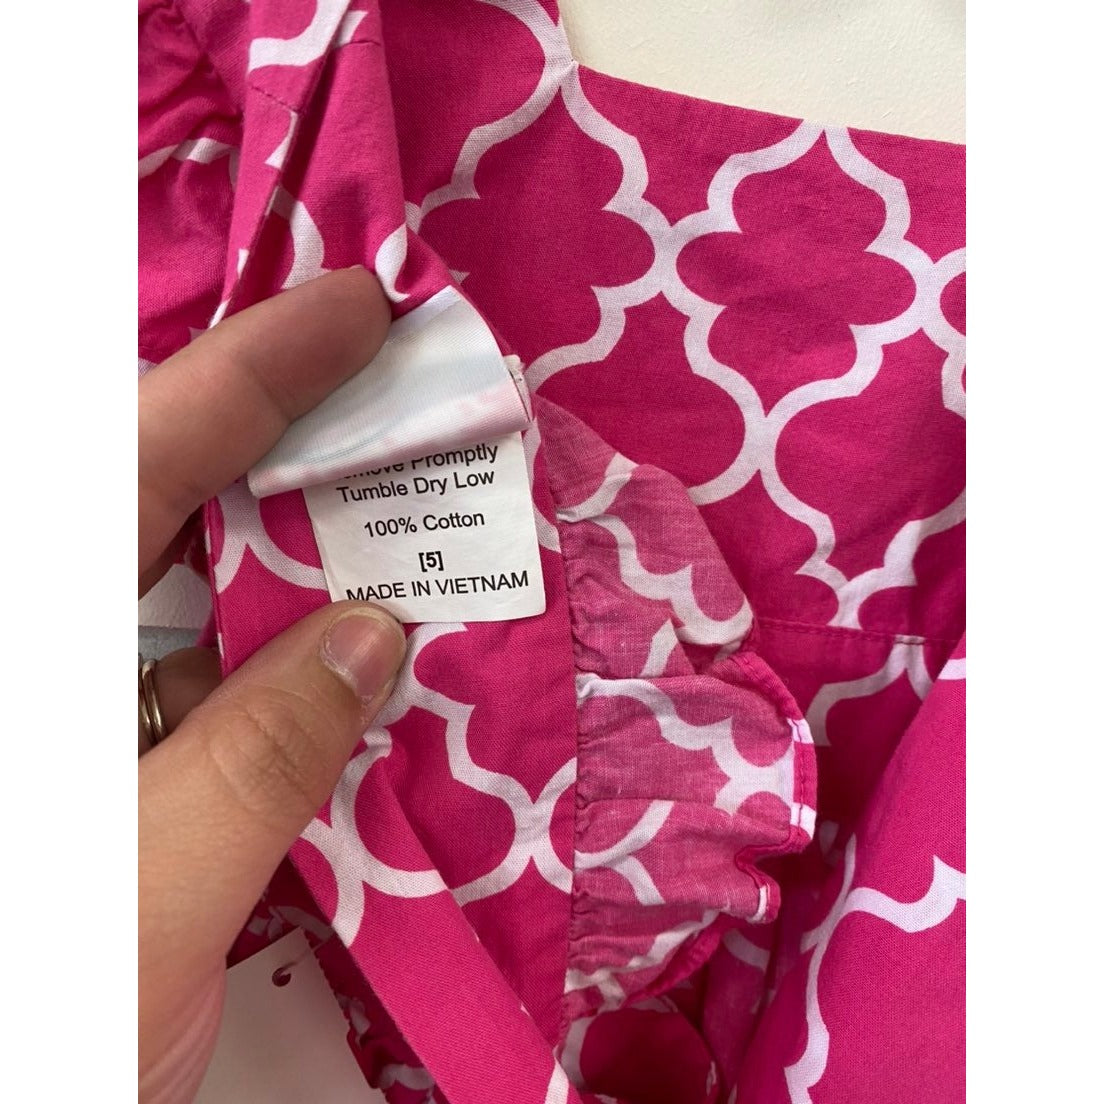 Size 5 pink ruffle dress